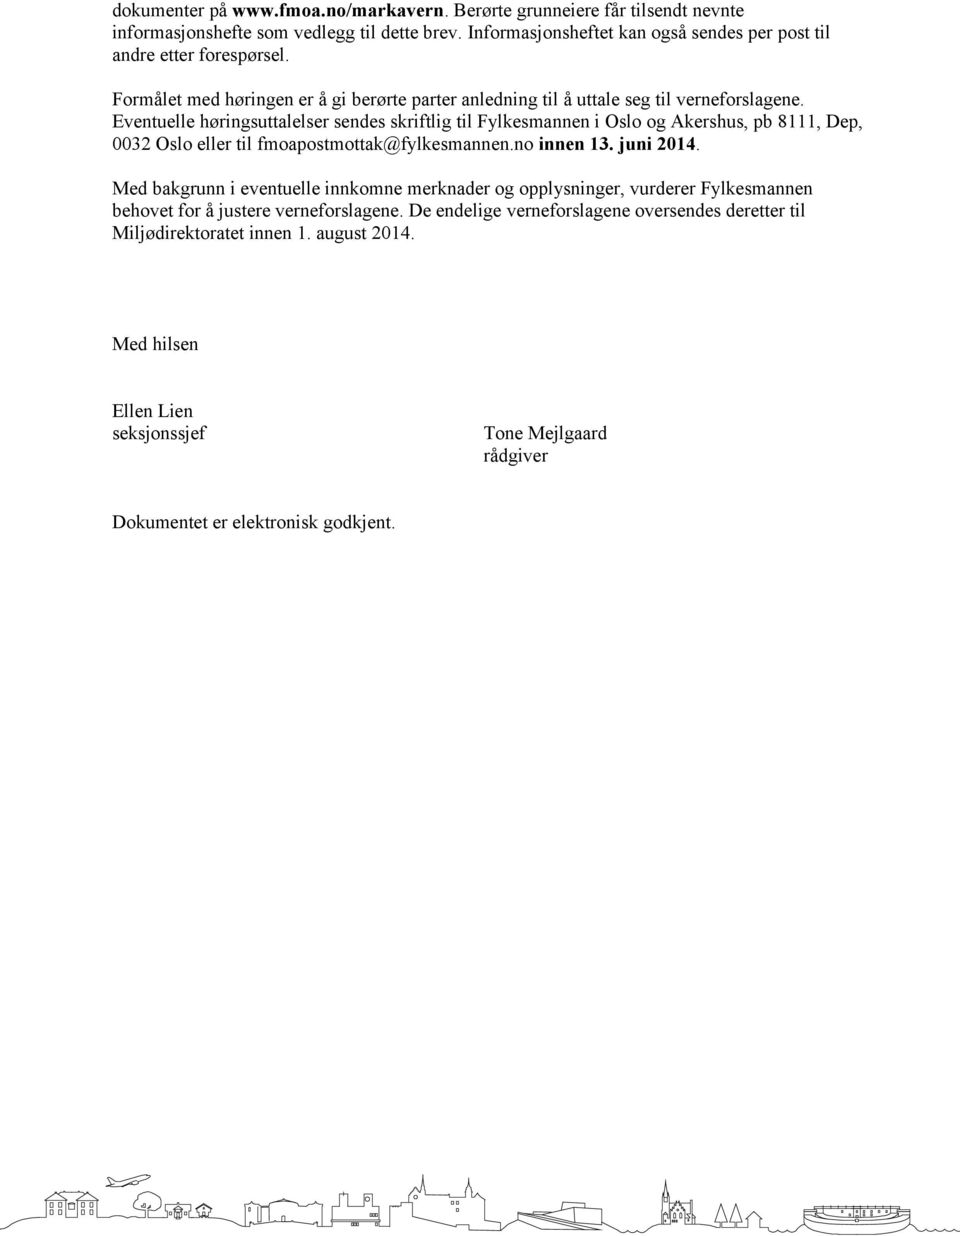 Eventuelle høringsuttalelser sendes skriftlig til Fylkesmannen i Oslo og Akershus, pb 8111, Dep, 0032 Oslo eller til fmoapostmottak@fylkesmannen.no innen 13. juni 2014.